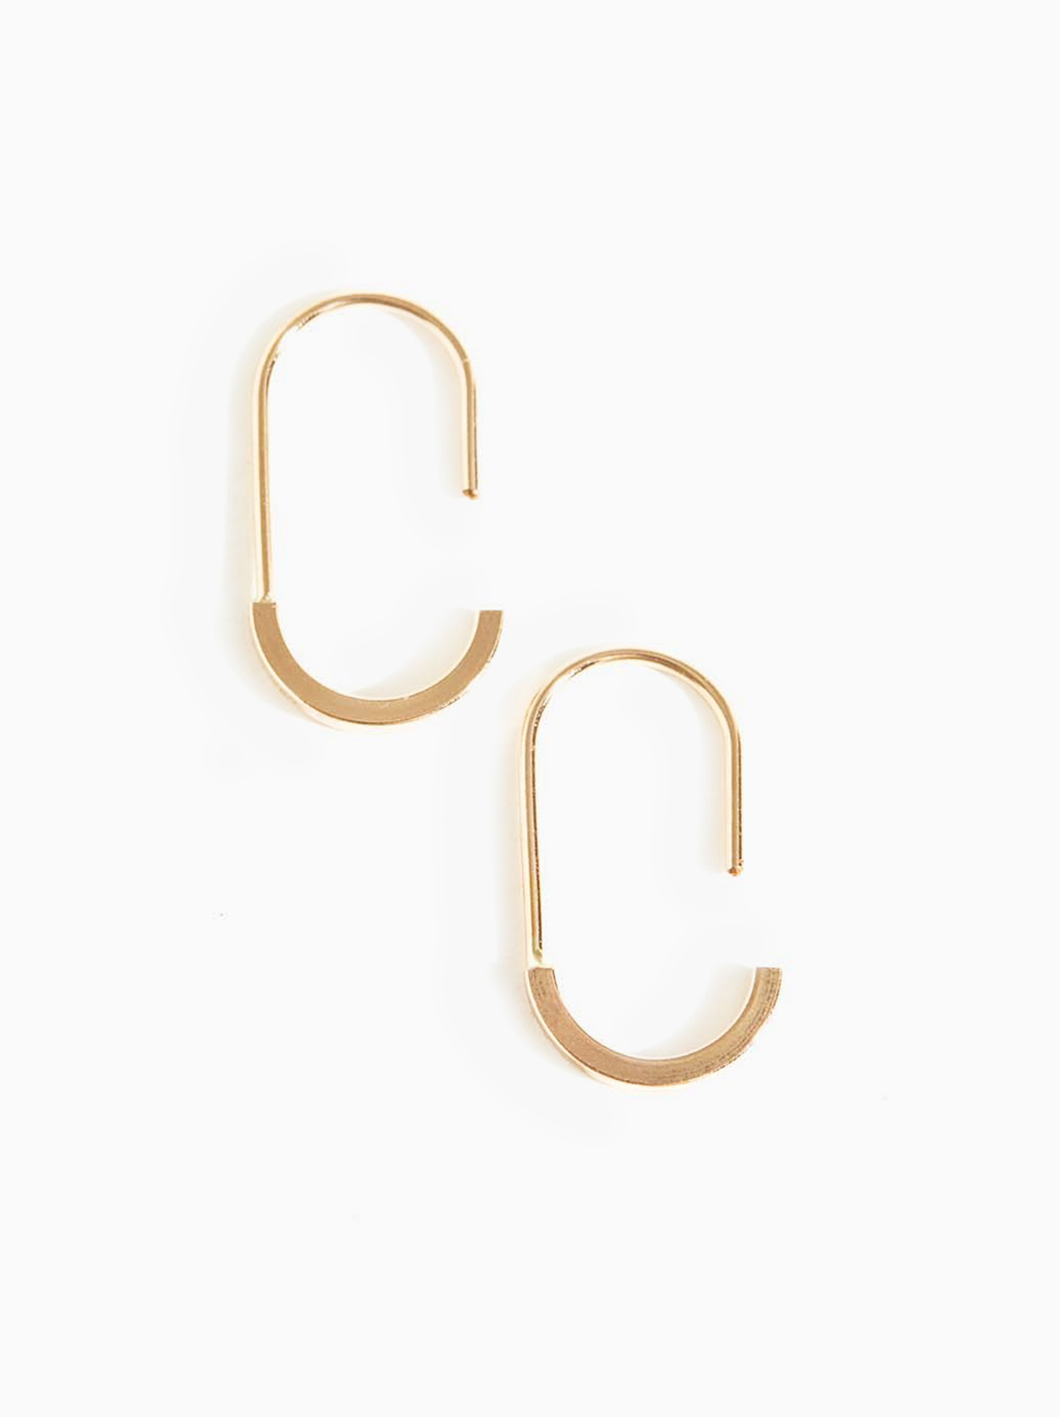 Hinge Earrings - Gold-filled